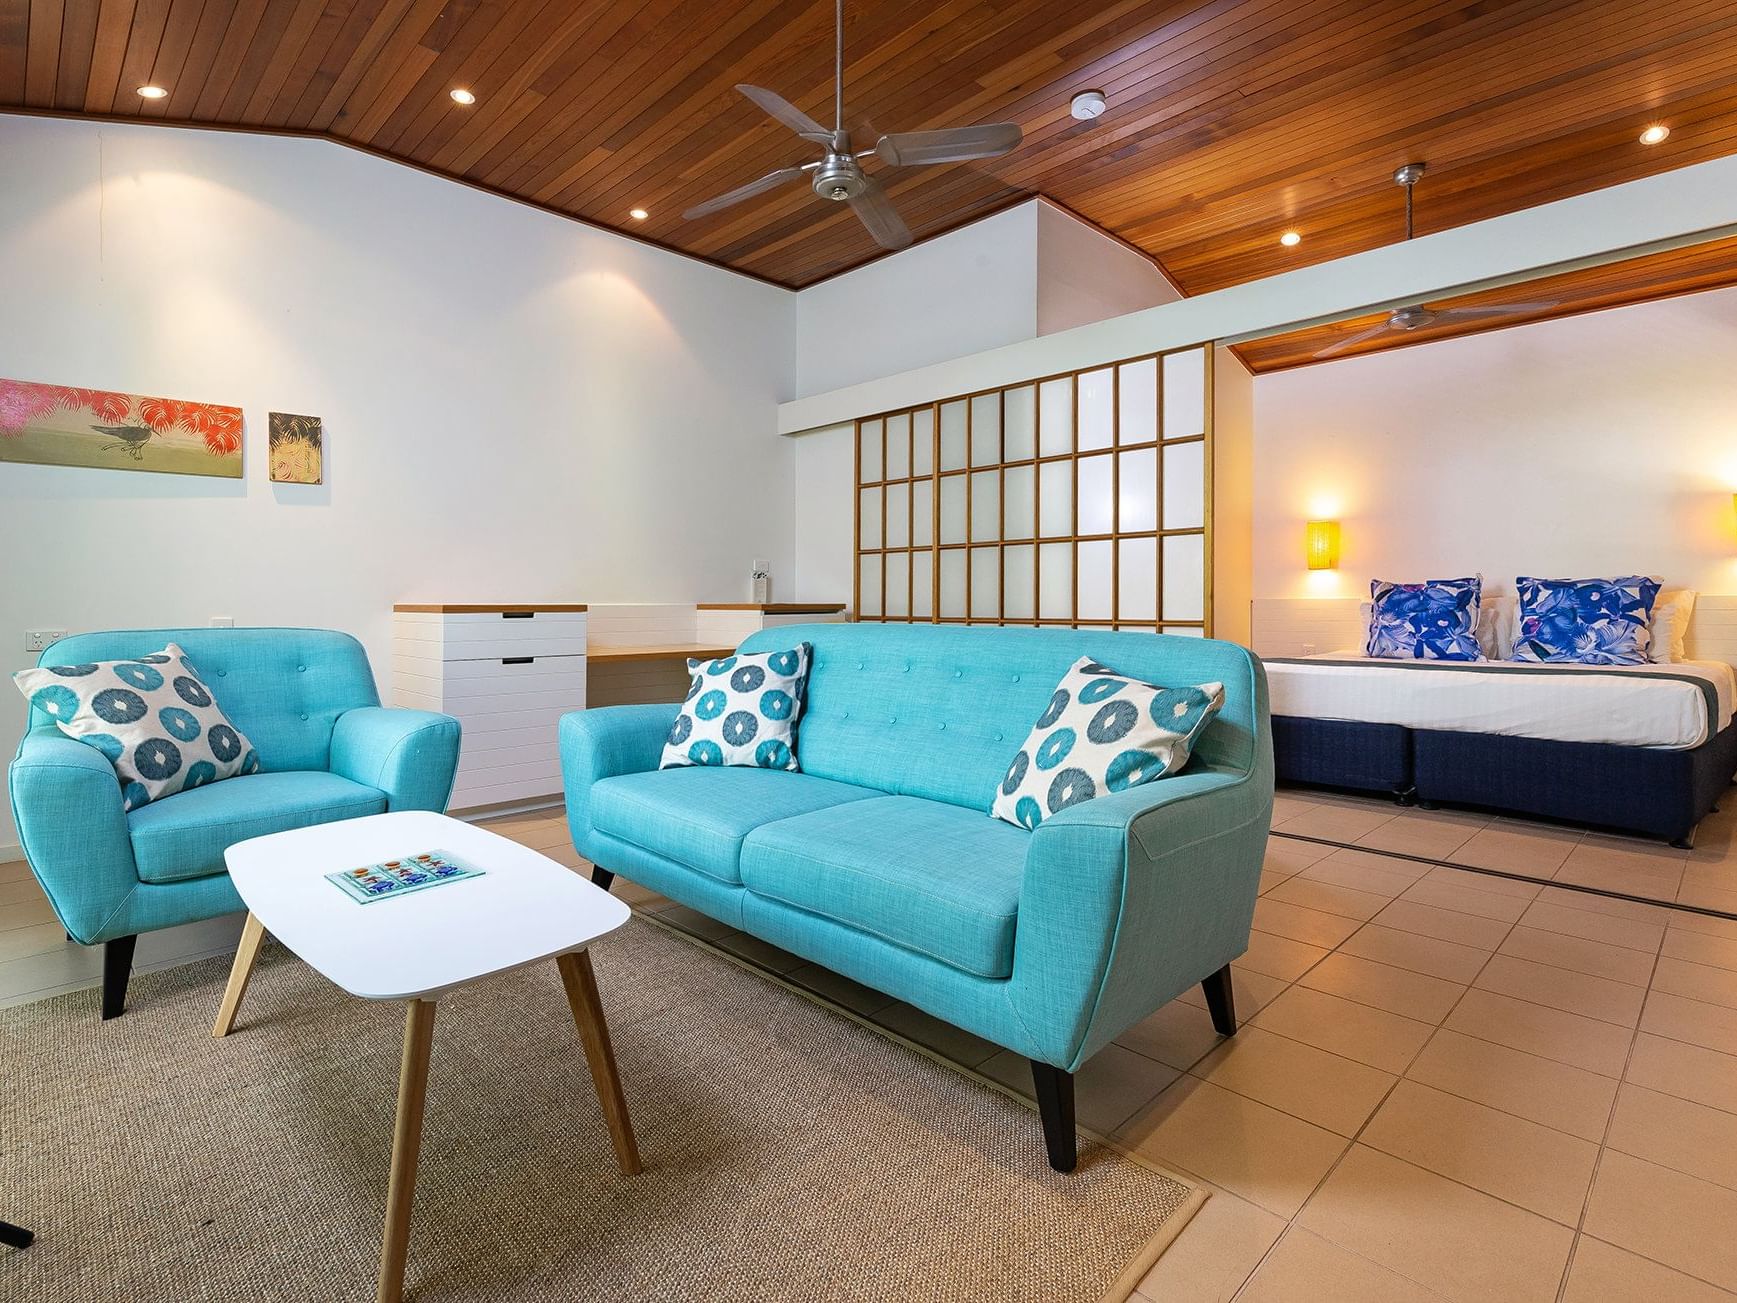 Wistari Suite at Heron Island Resort in Queensland, Australia